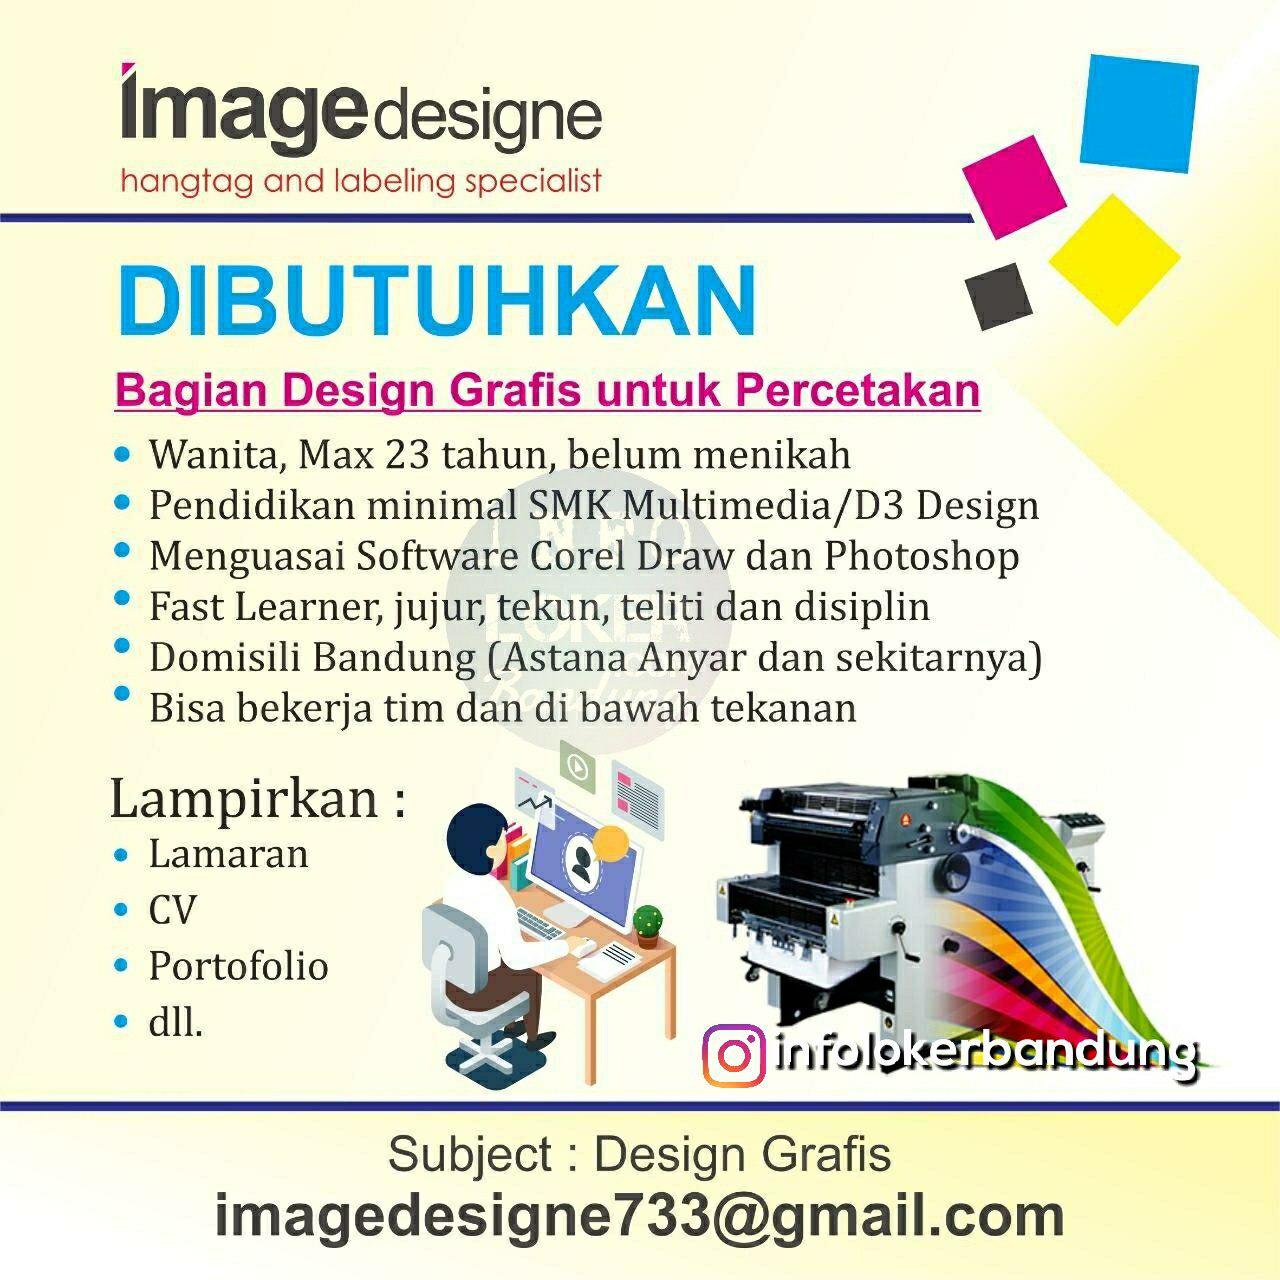 Lowongan Kerja Design Grafis Image Designe Bandung Desember 2018